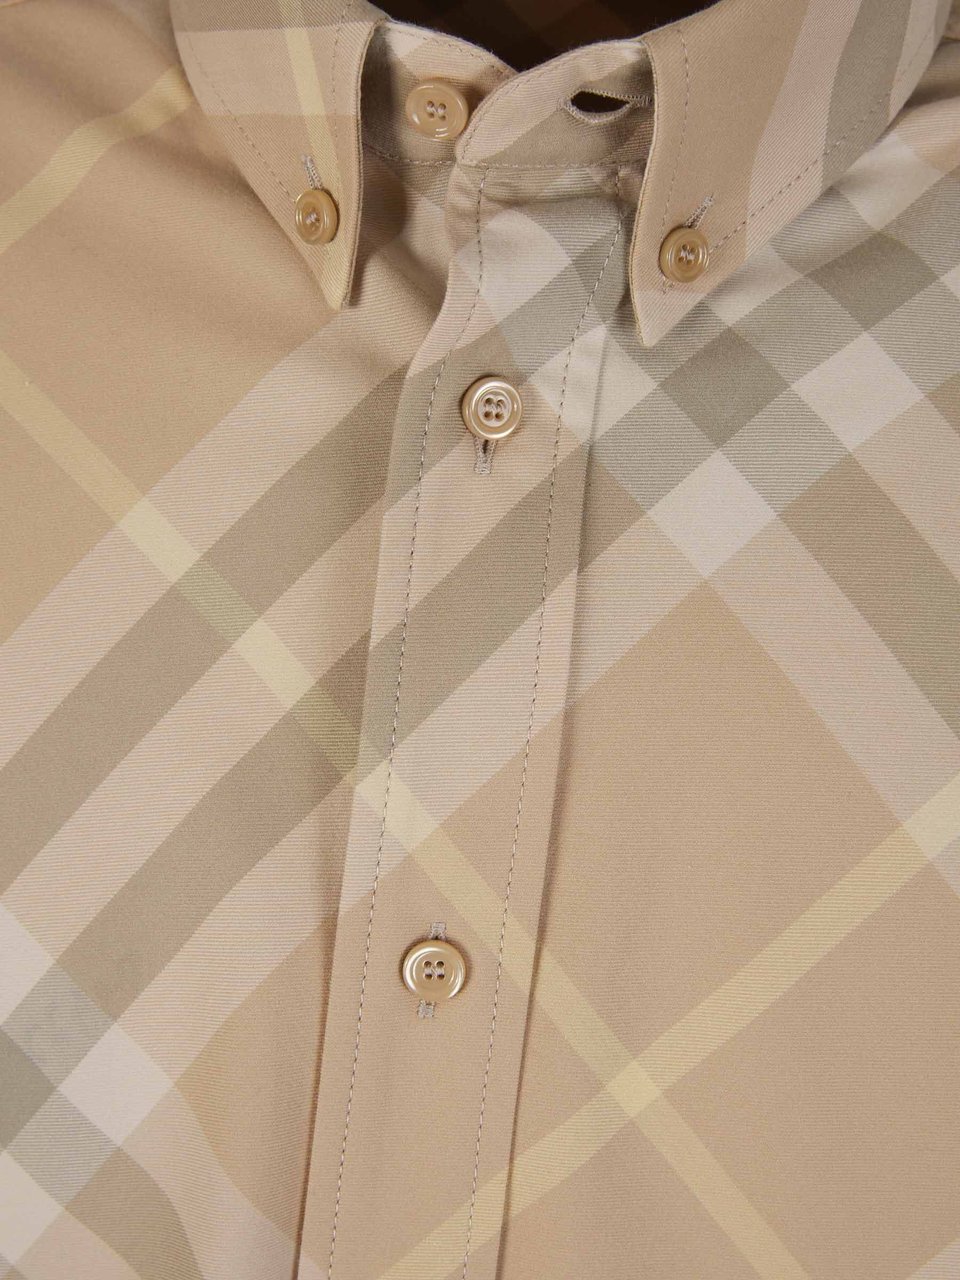 Burberry Checkered Motif Shirt Beige